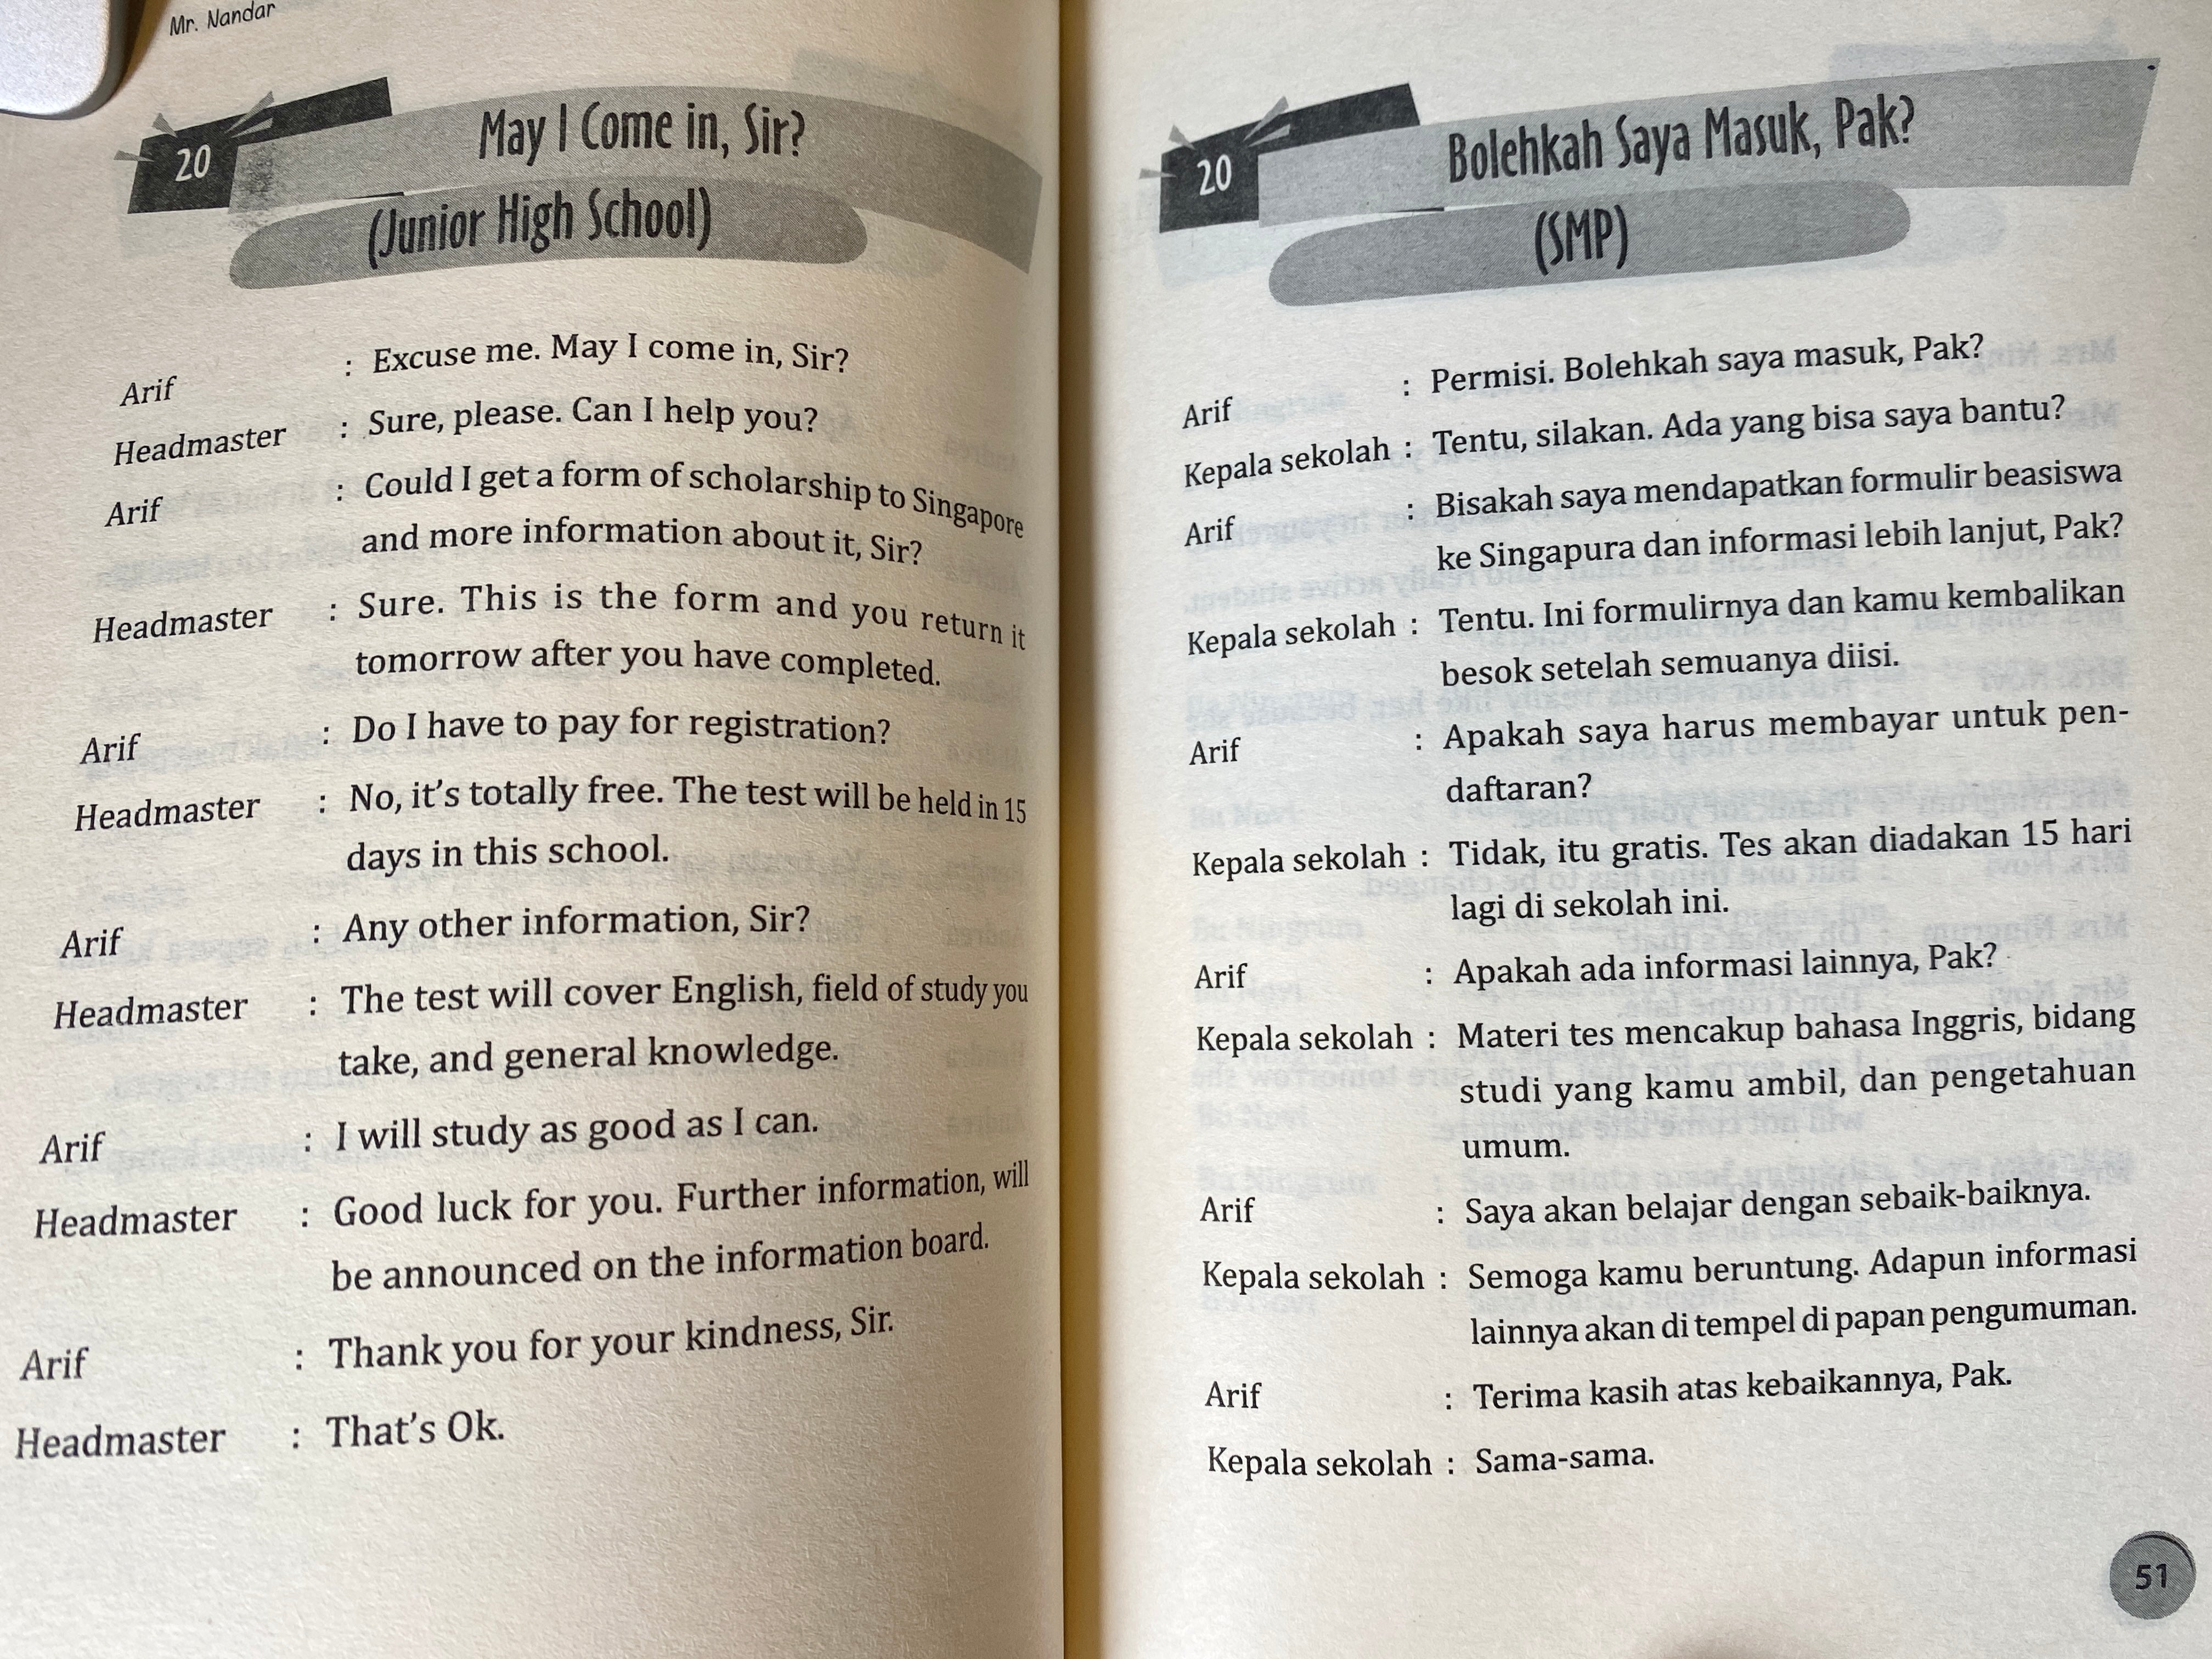 自學印尼語必備神書 52個日常印尼語對話範例及800個實用印尼語單字 英印雙語參照